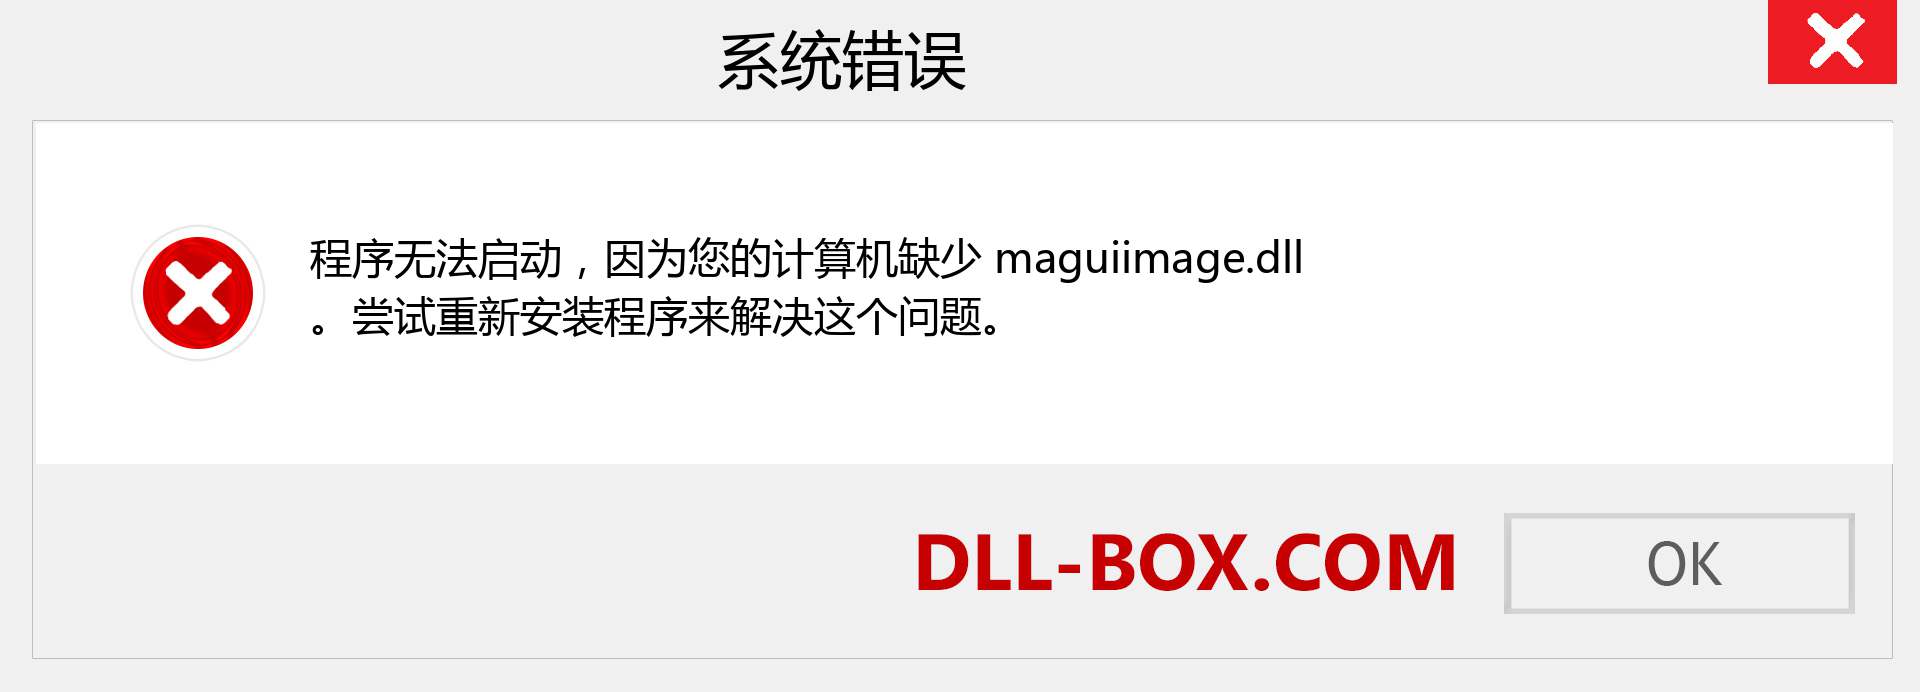 maguiimage.dll 文件丢失？。 适用于 Windows 7、8、10 的下载 - 修复 Windows、照片、图像上的 maguiimage dll 丢失错误